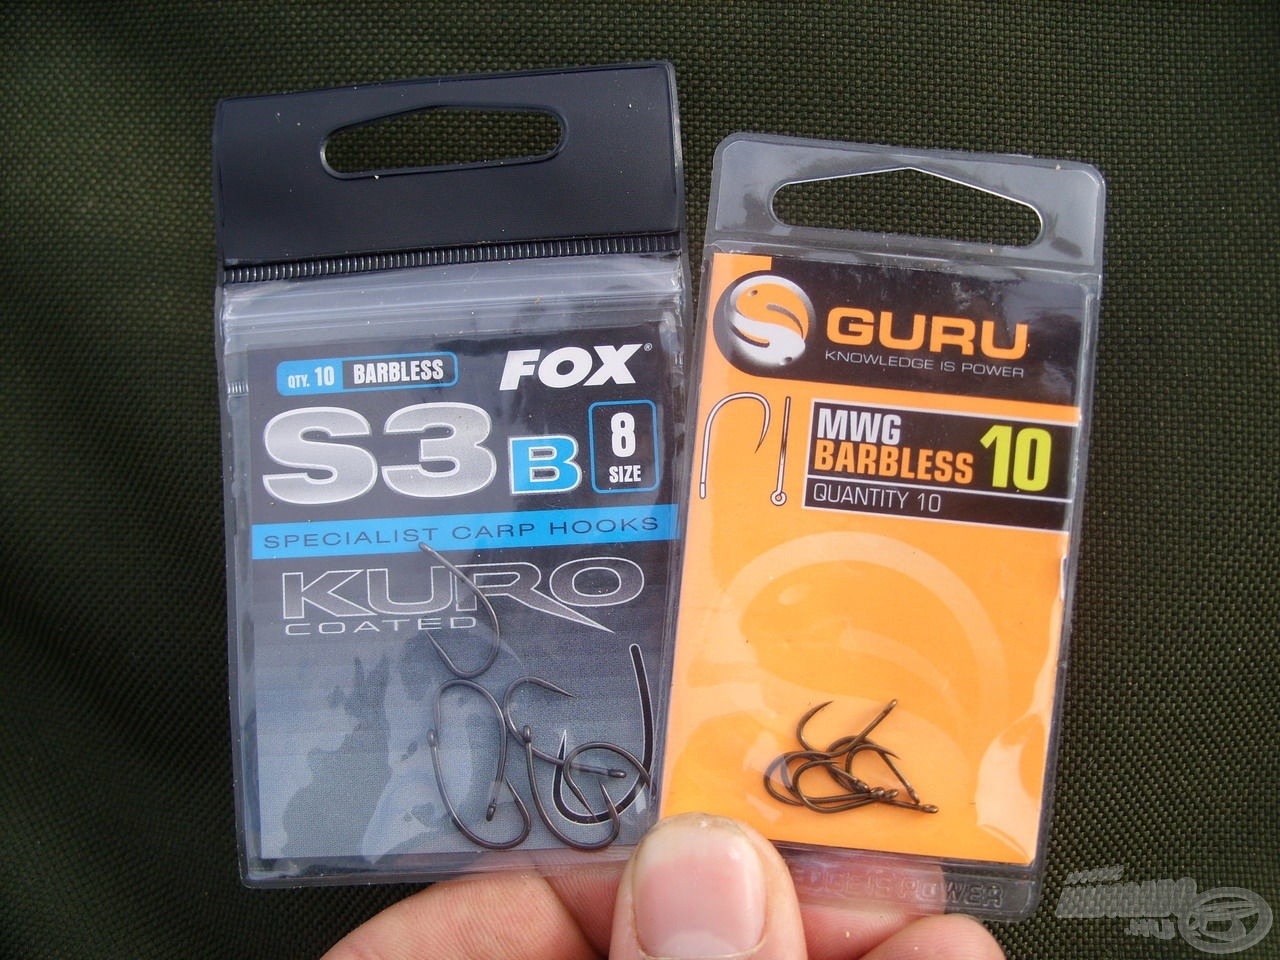 Az intenzíven horgászott sporttavakon gyakran inkább a szakállnélküli - barbless - horgokat részesítem előnyben. Két kedvenc típusom a Fox S3 Kuro és a Guru MWG Barbless